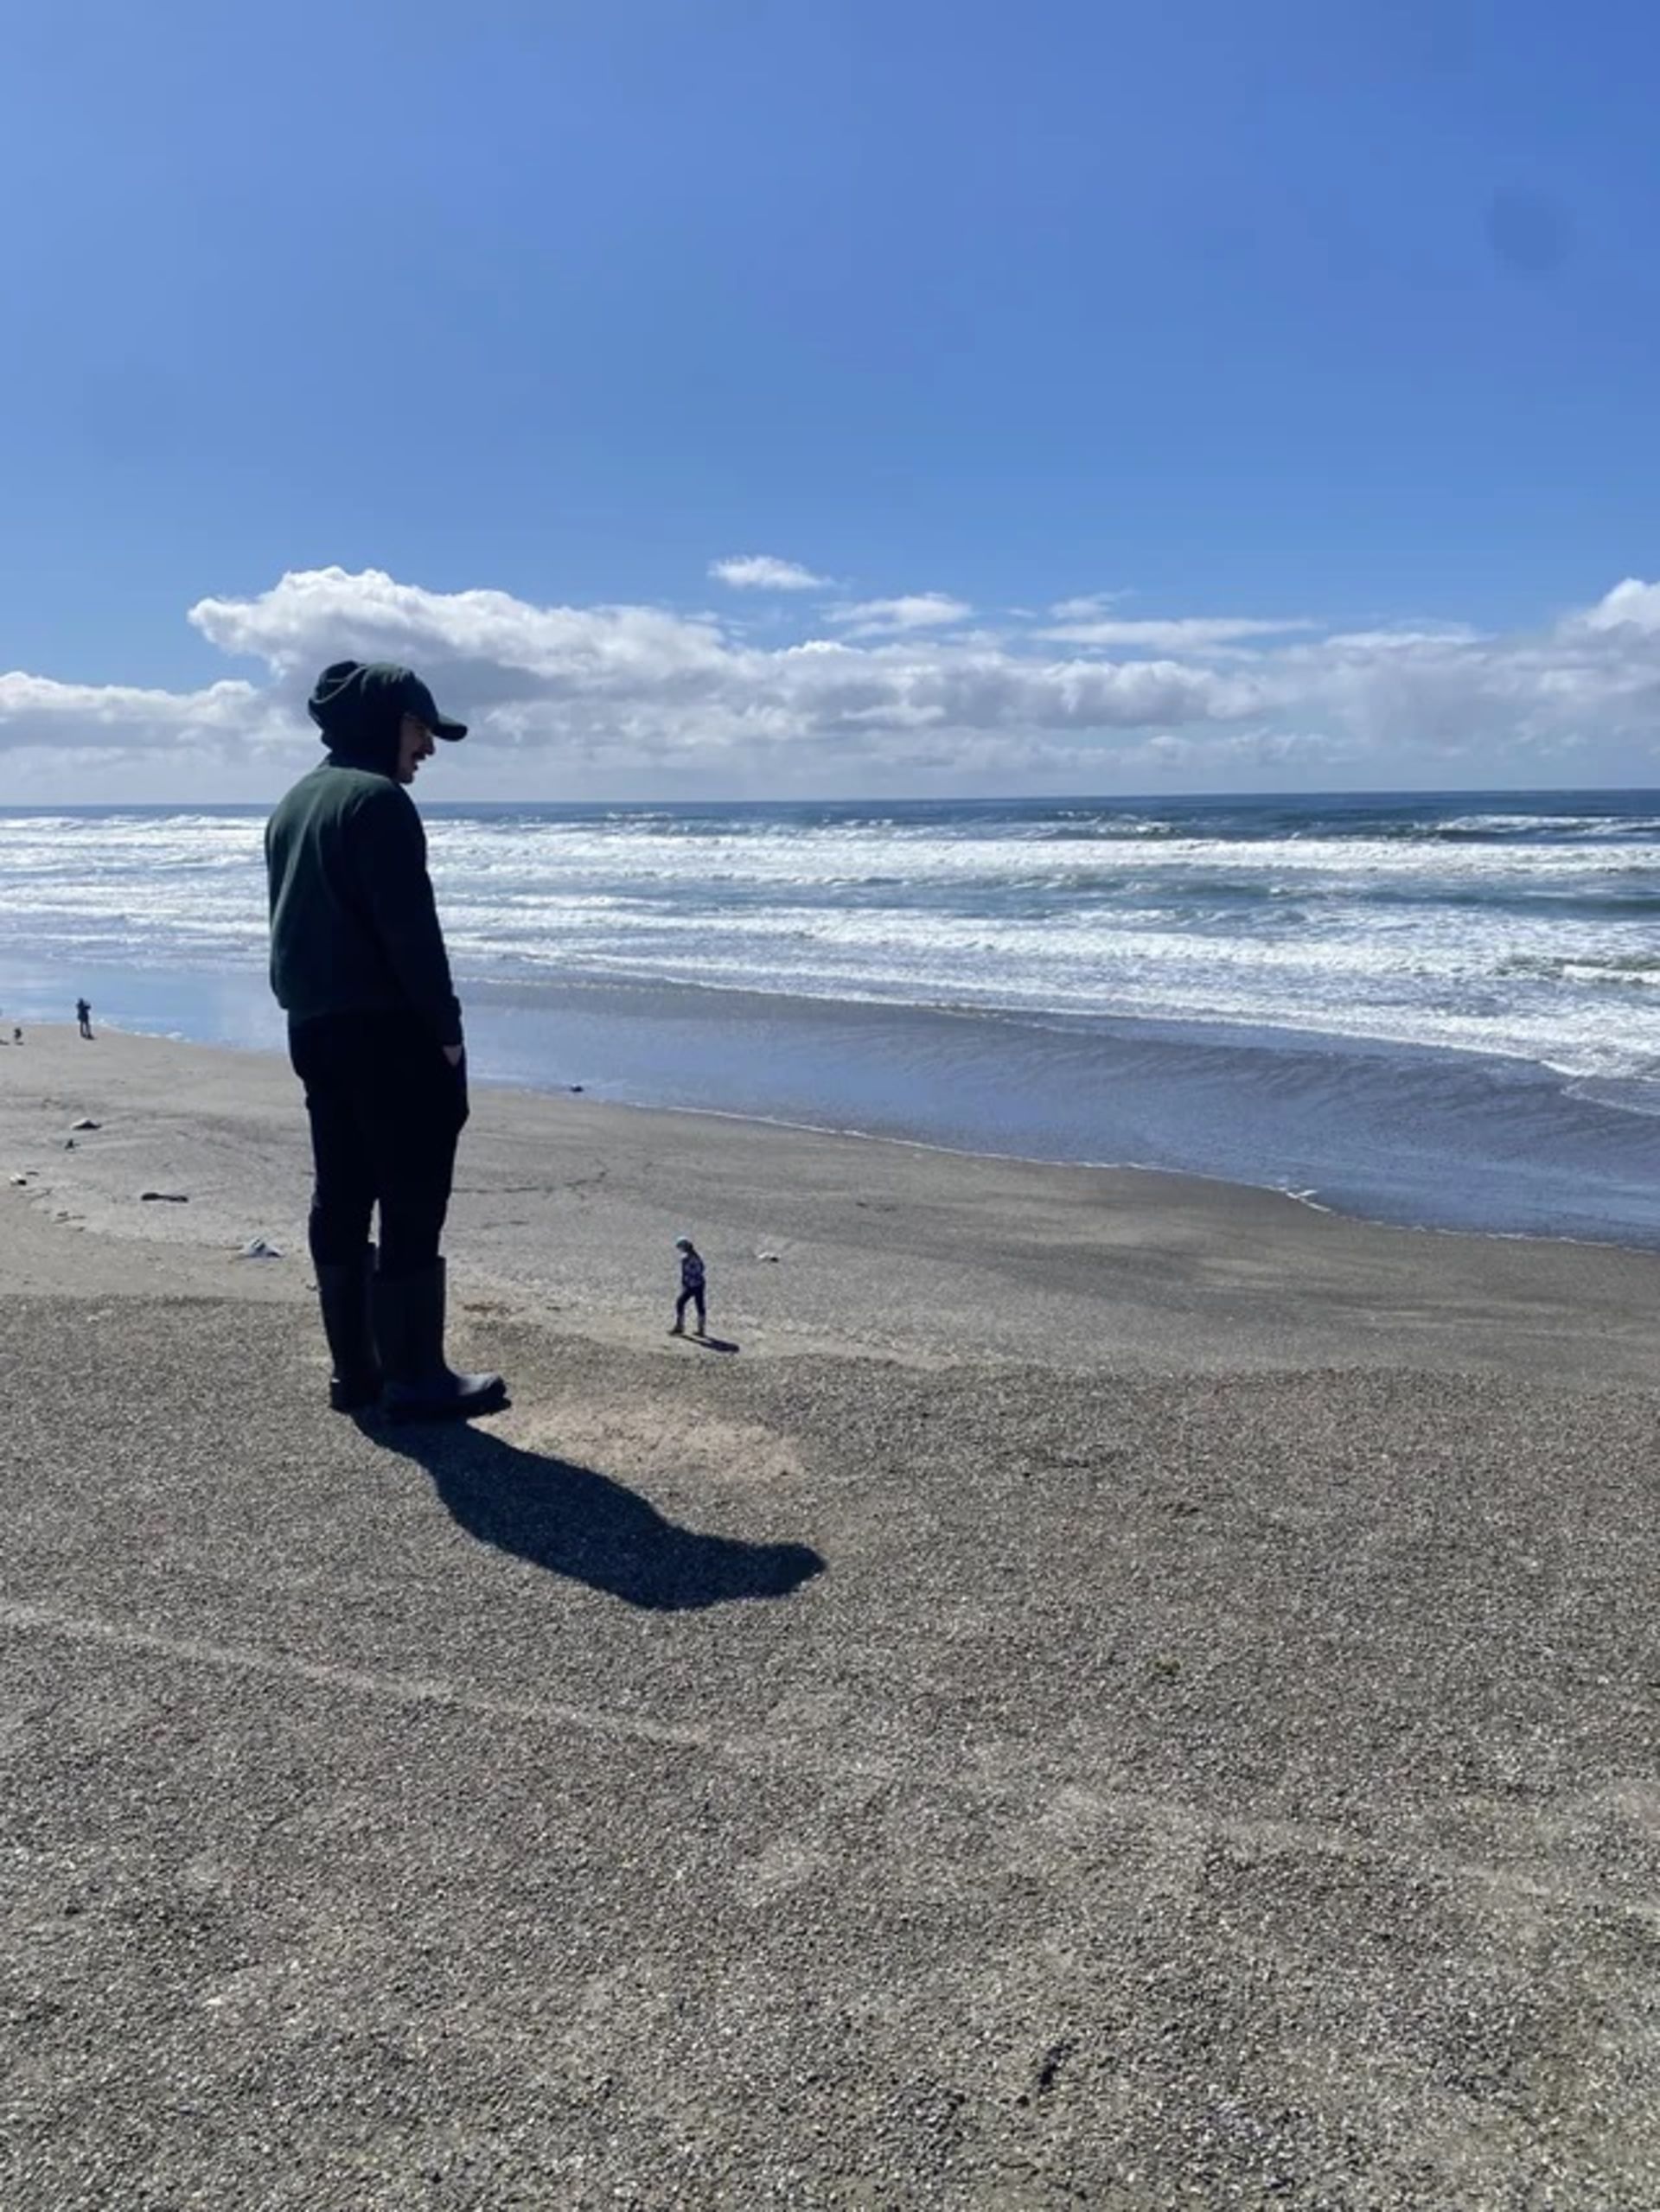 مرد در ساحل